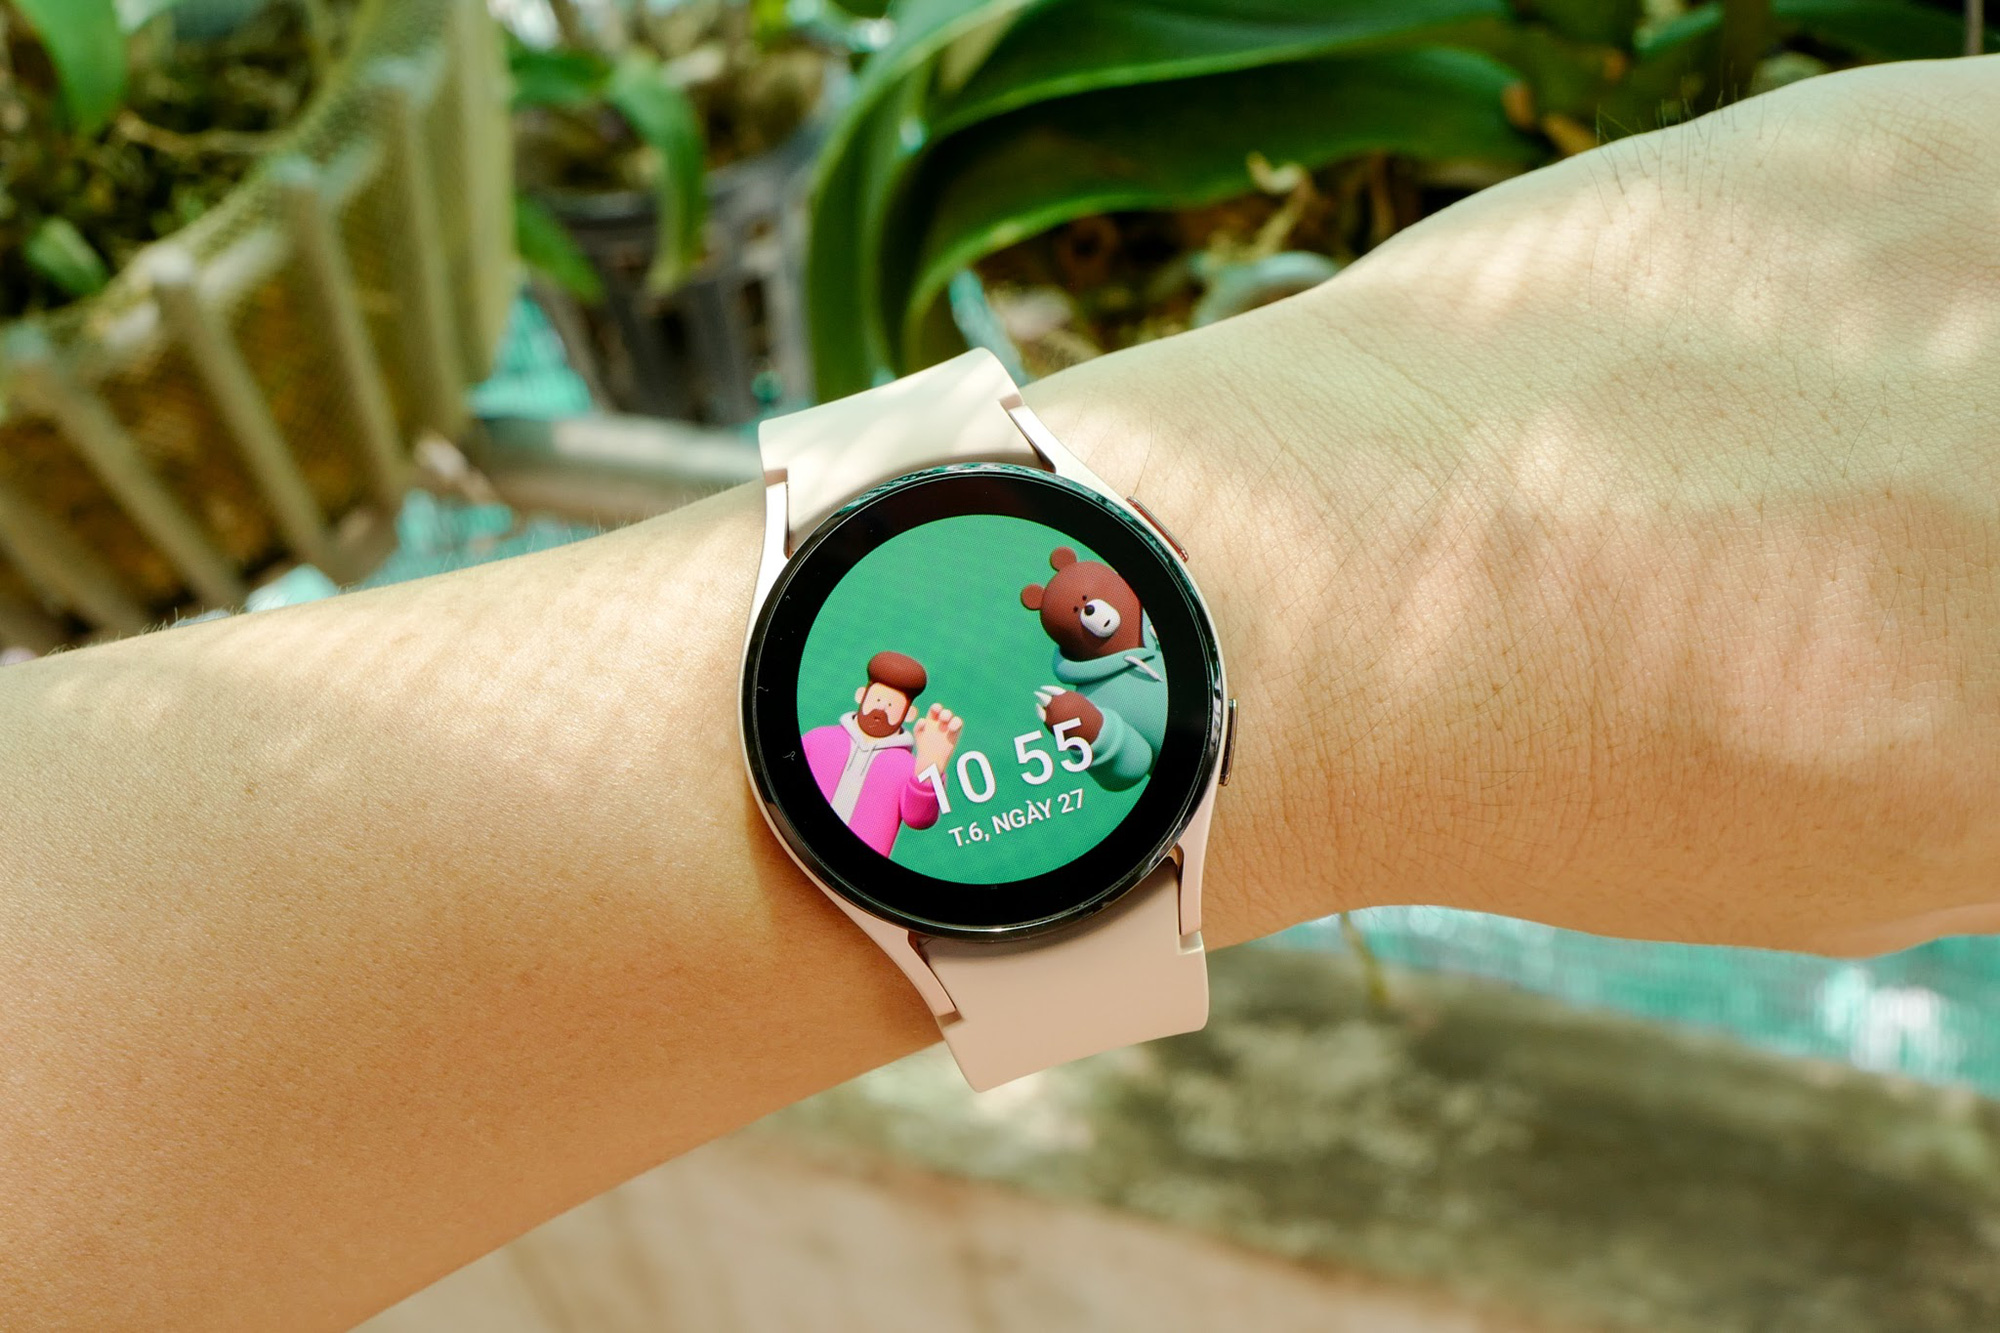 Trải nghiệm nhanh Galaxy Watch 4: Đồng hồ thông minh của Samsung nay lại càng thông minh hơn - Ảnh 1.